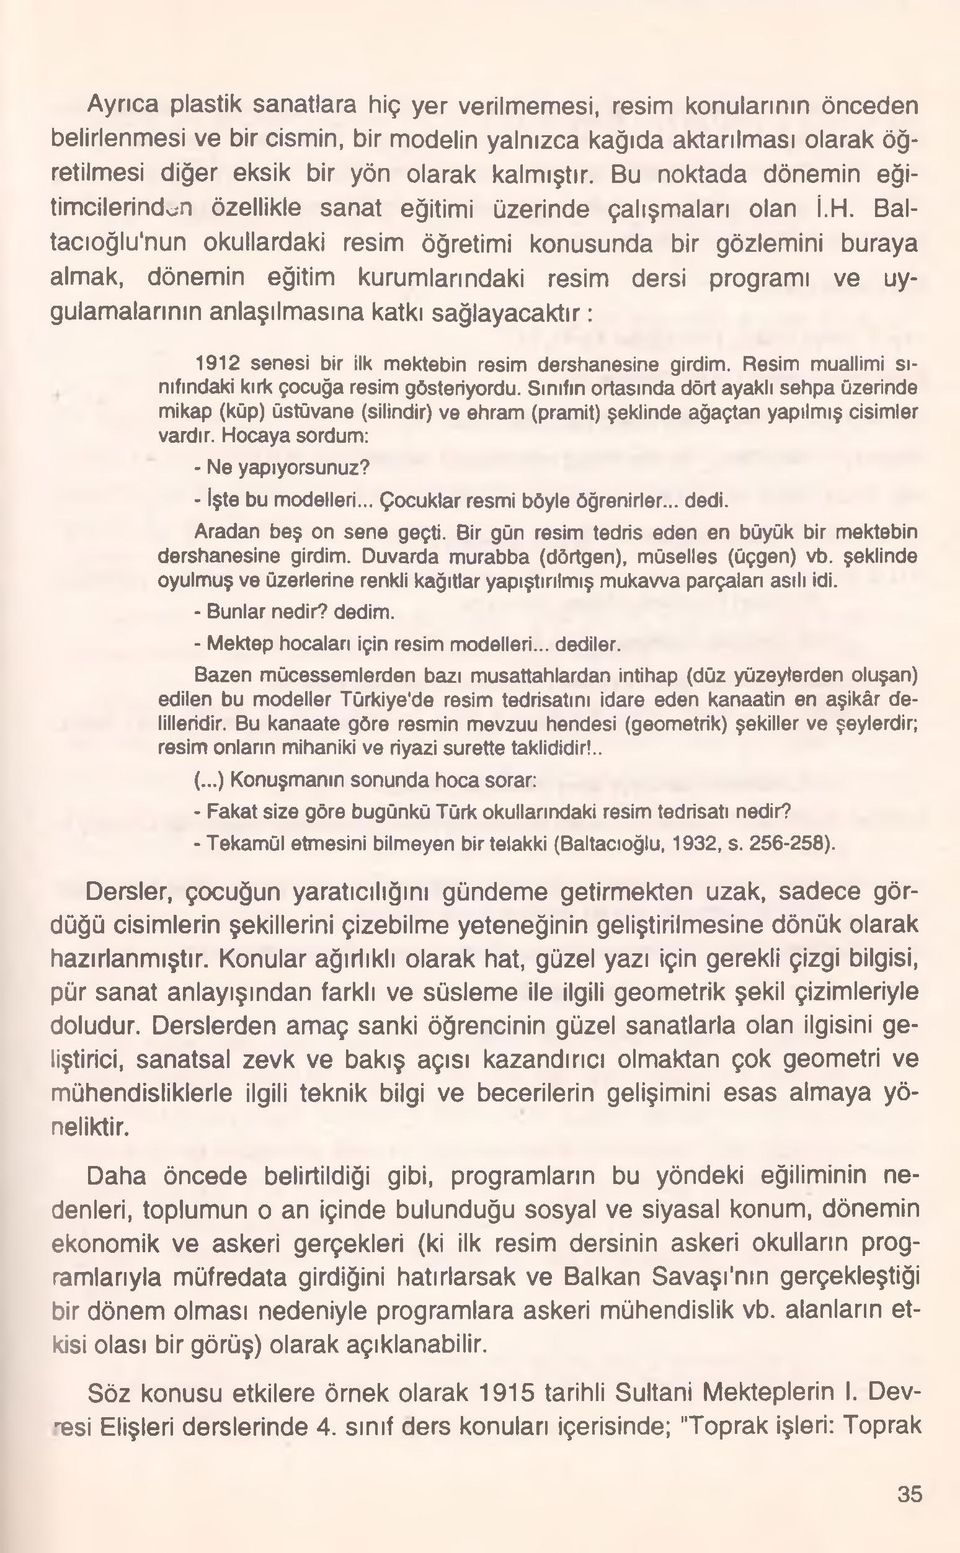 Baltacıoğlu'nun okullardaki resim öğretimi konusunda bir gözlemini buraya almak, dönemin eğitim kurumlanndaki resim dersi programı ve uygulamalarının anlaşılmasına katkı sağlayacaktır: 1912 senesi